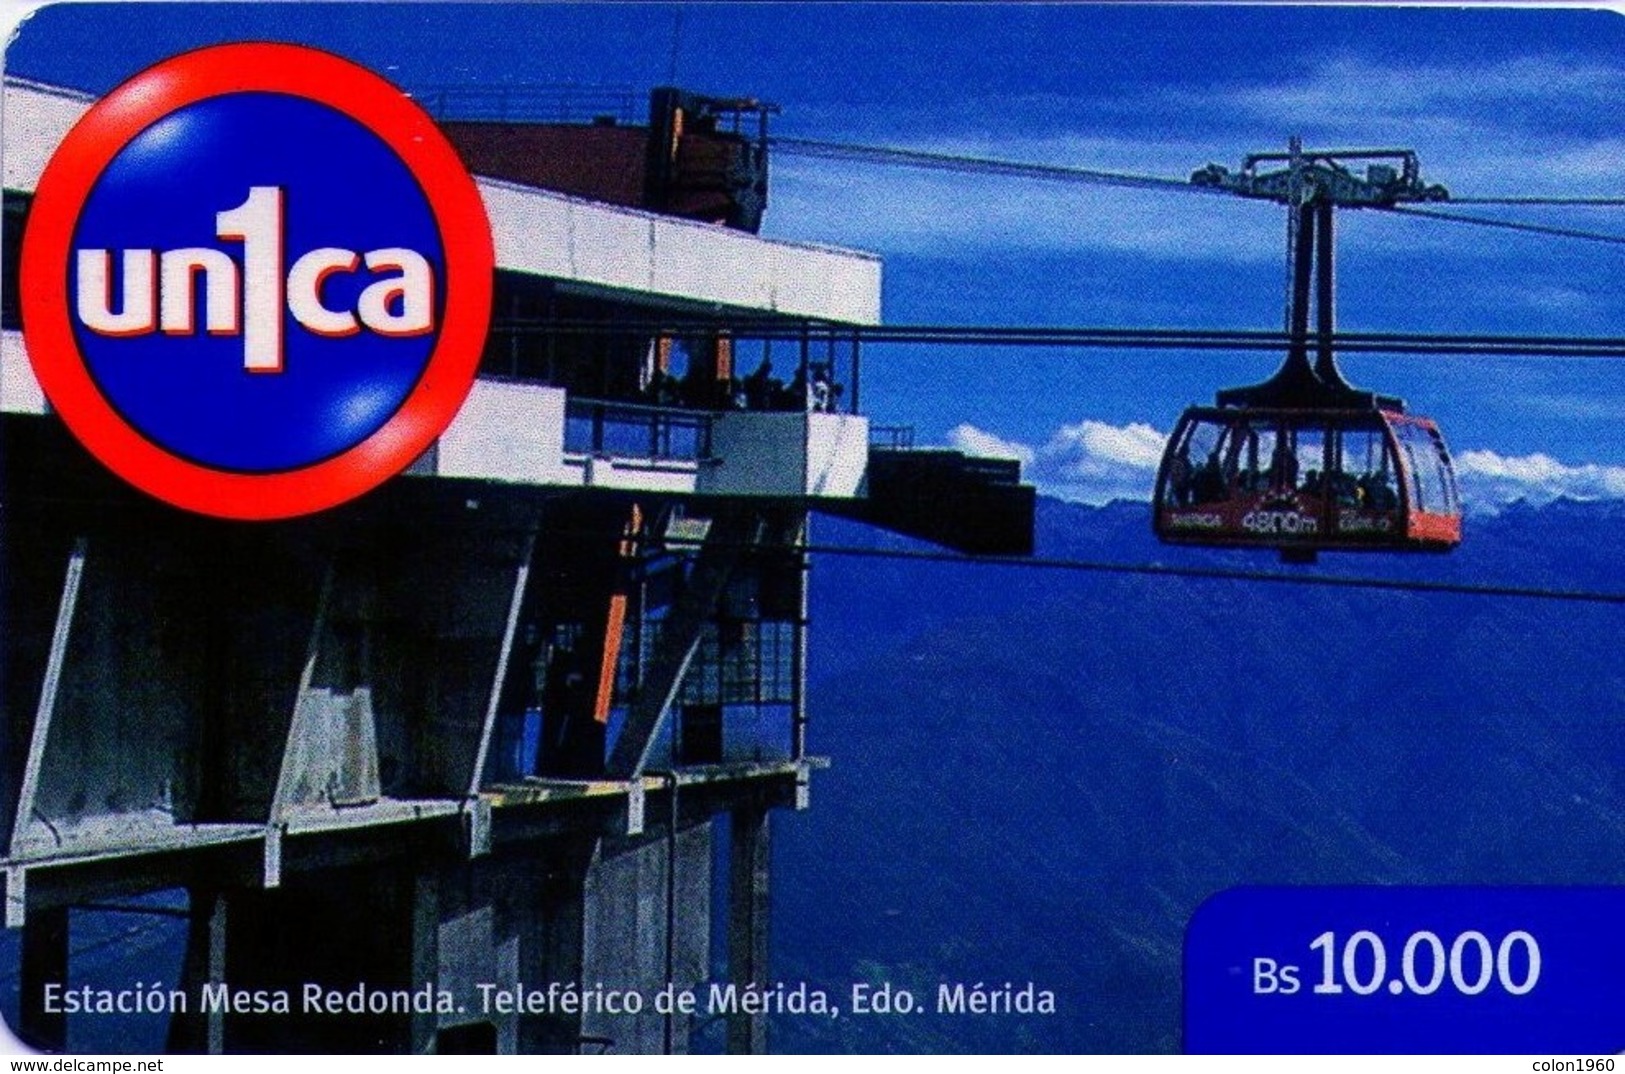 VENEZUELA, GSM-RECARGA. Estación Mesa Redonda, Teleférico De Mérida, Edo. Mérida. UNI1-0805. (295). - Venezuela